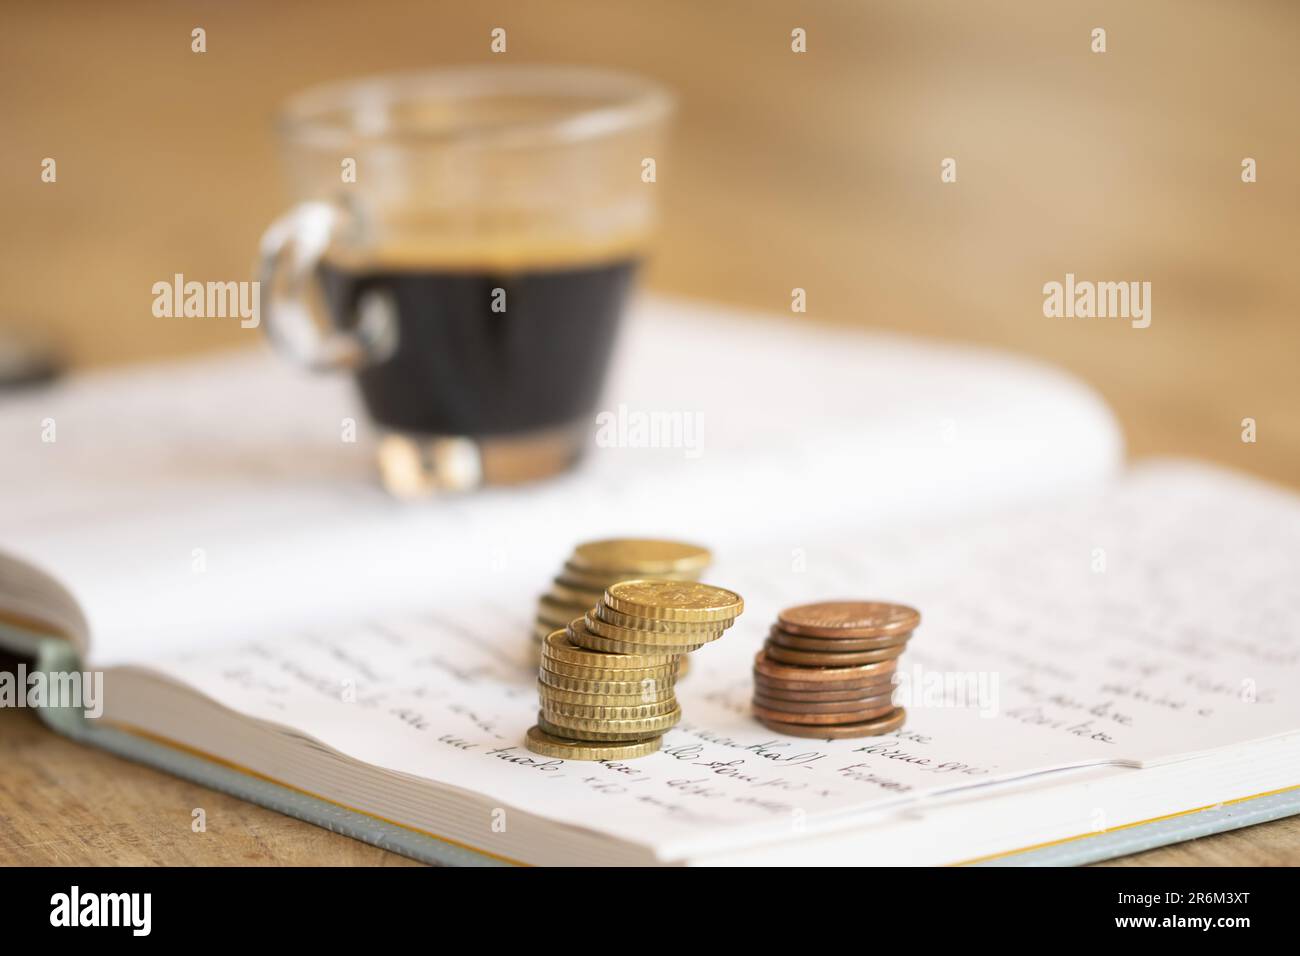 concetto di risparmio e spese familiari con monete su un notebook scritto a mano Foto Stock